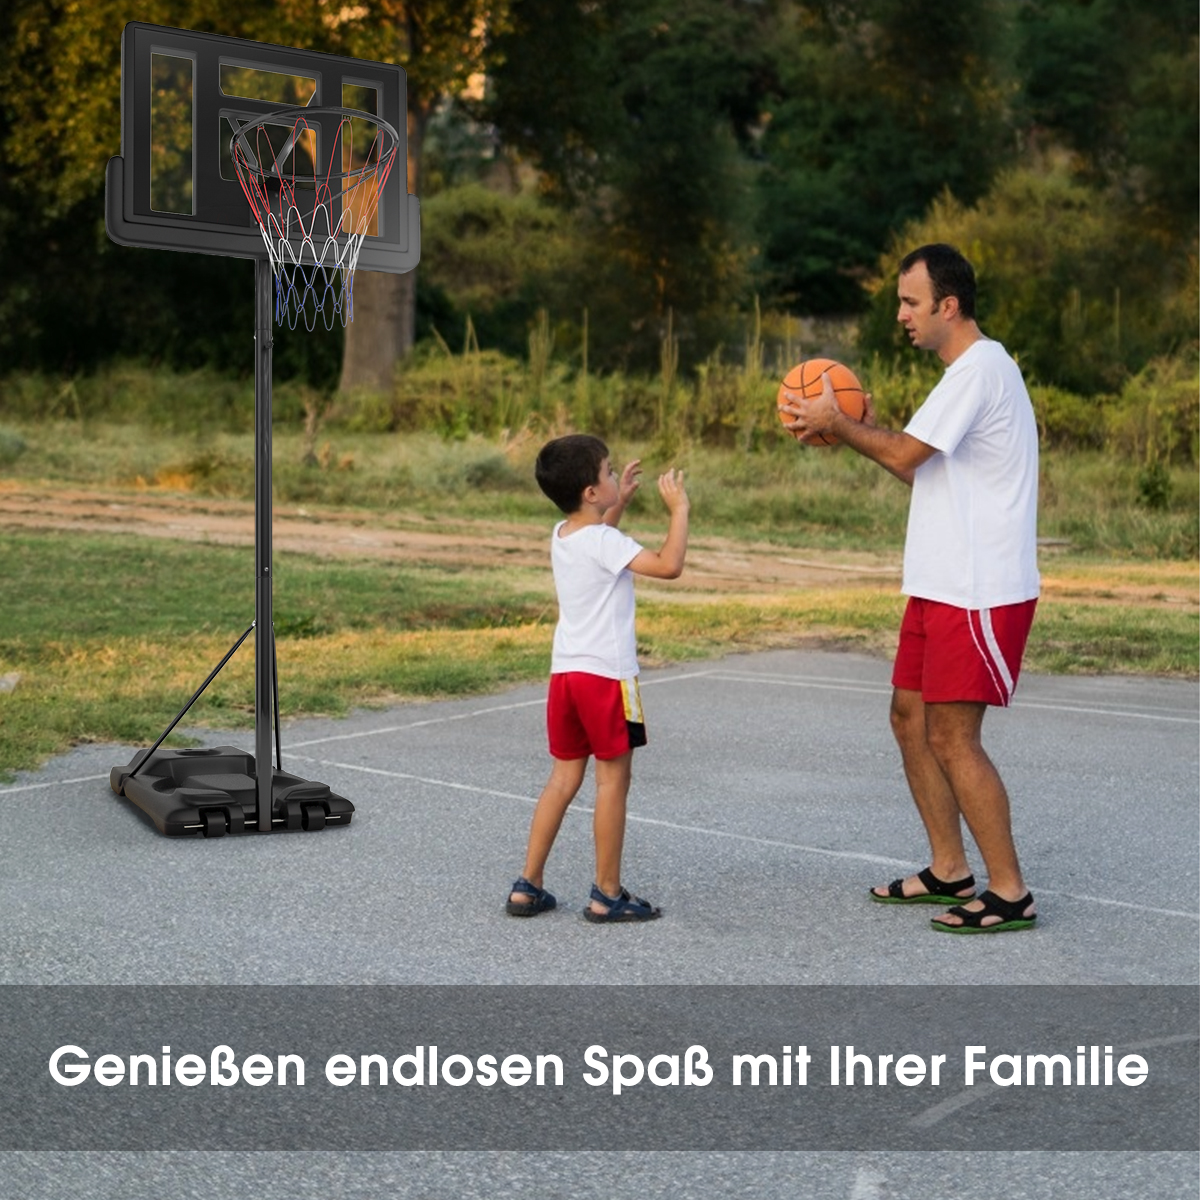 COSTWAY Basketballständer 260-305 cm höhenverstellbar Schwarz Gartenspielzeug